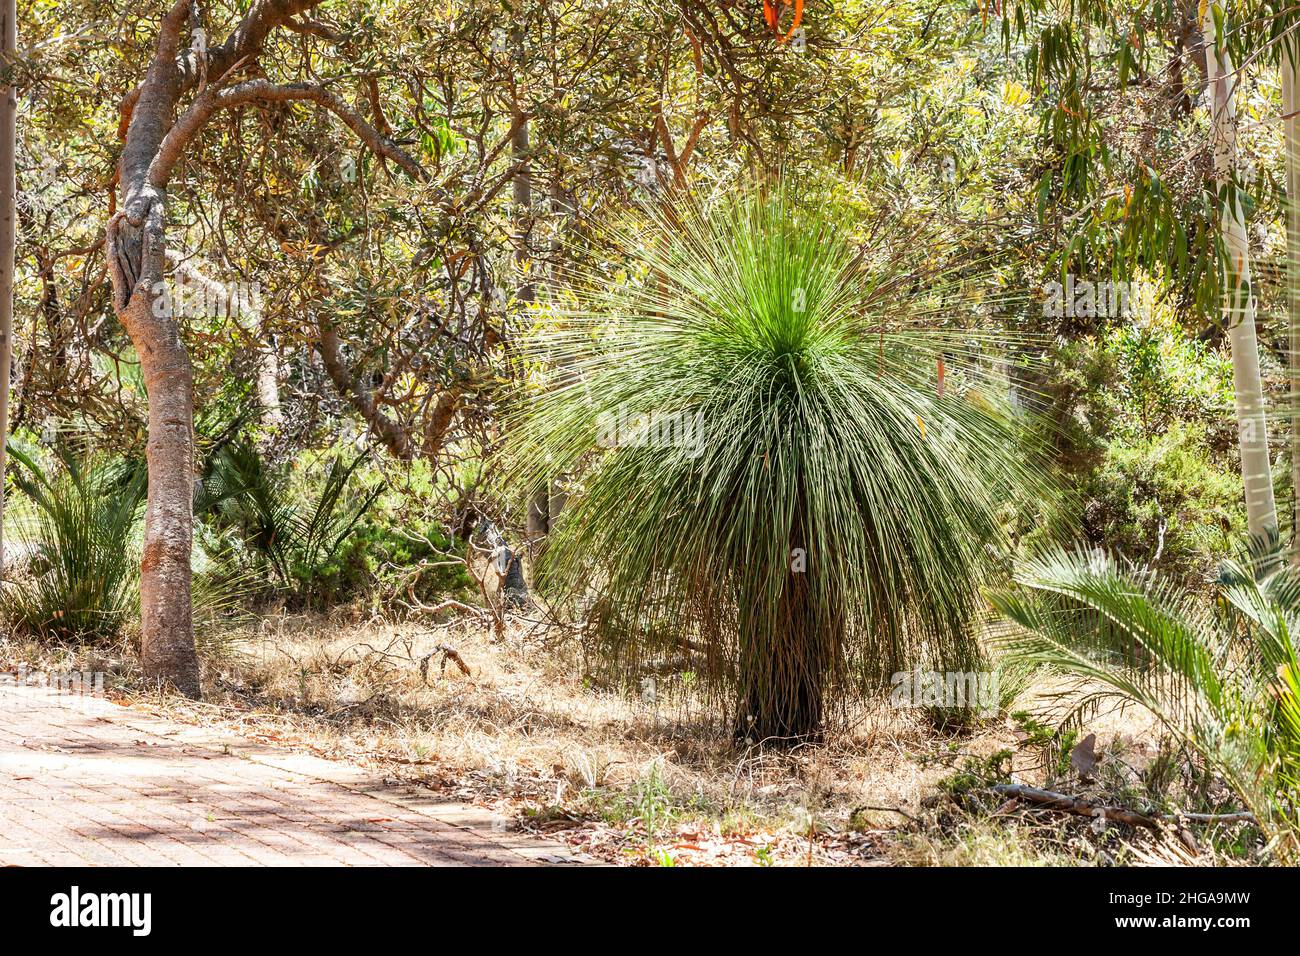 Grasbaum oder Black Boys, Xanthorrhoe, langsam wachsende eingelappte Pflanze in Western Australia auf dunklem bis schwarzem Stamm mit einer Krone ähnlich lang gewachsen Stockfoto